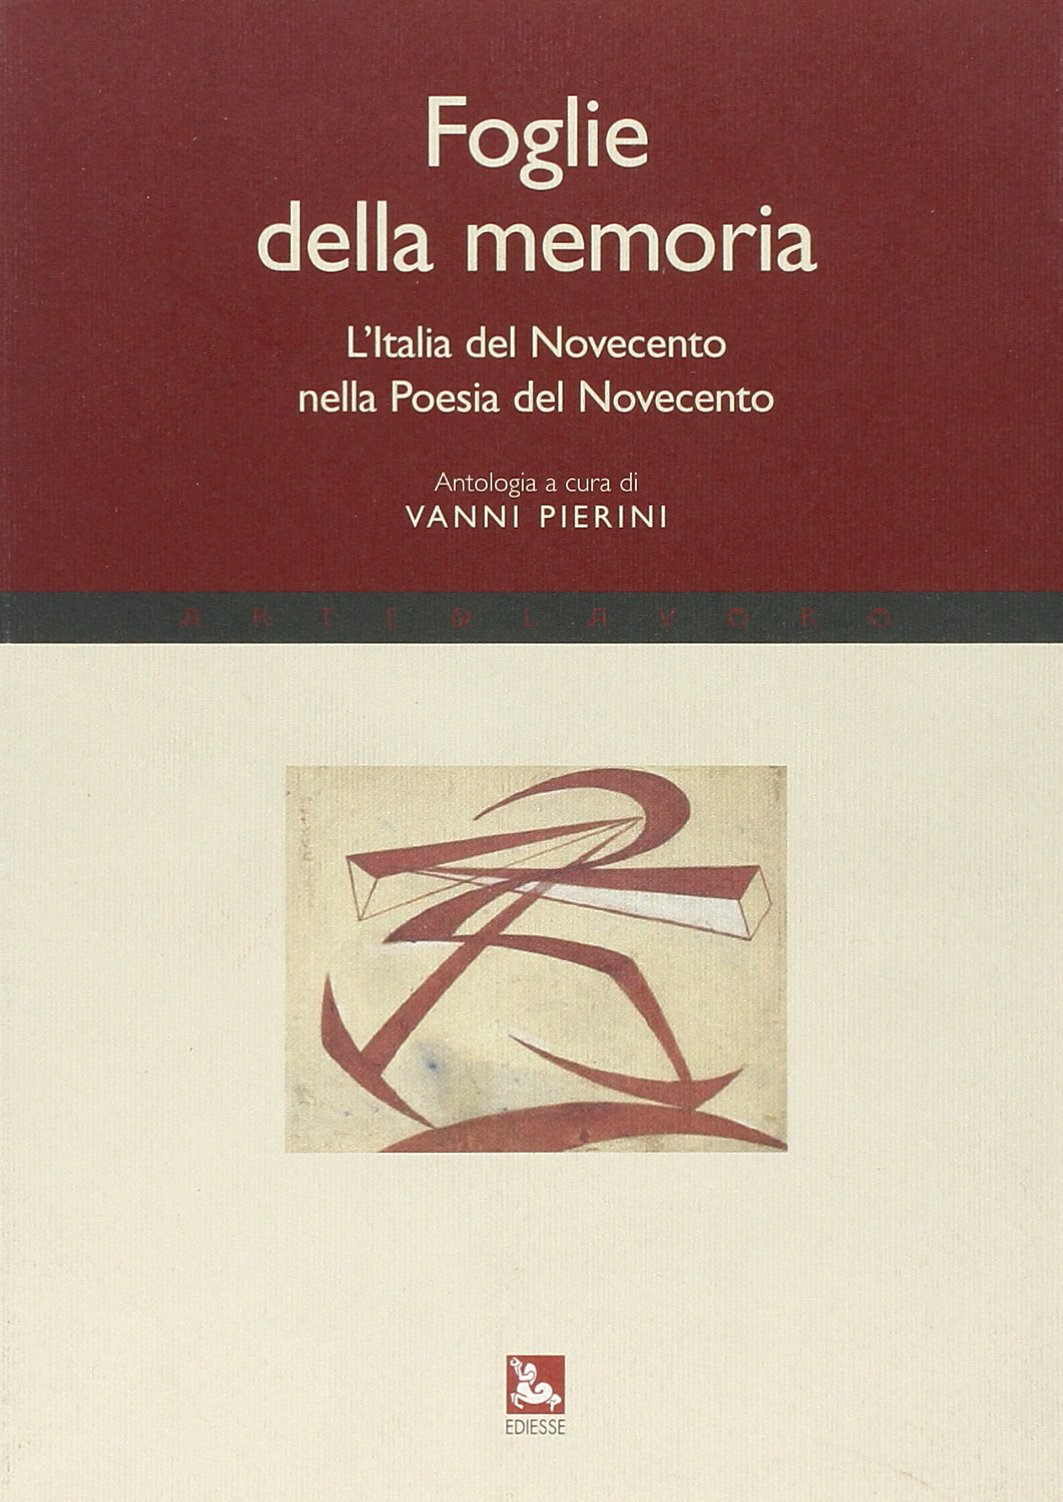 Foglie della memoria. L’Italia del Novecento nella Poesia del Novecento